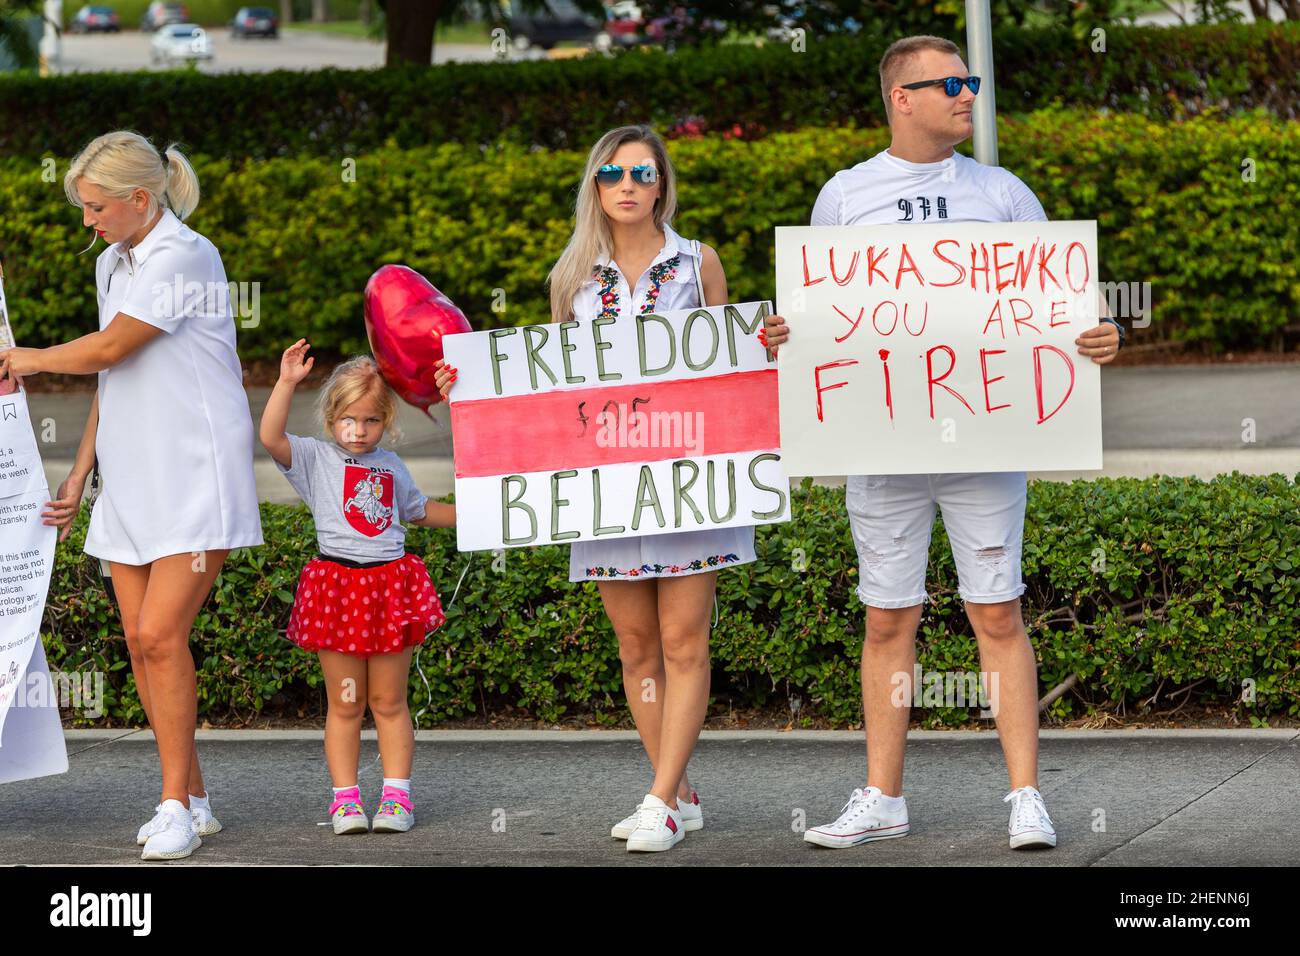 Bielorussia persone per una protesta contro Lukashenko in Florida, USA. Segnali per un'elezione equa, la libertà dei prigionieri politici in Bielorussia. Manifestanti. Foto Stock